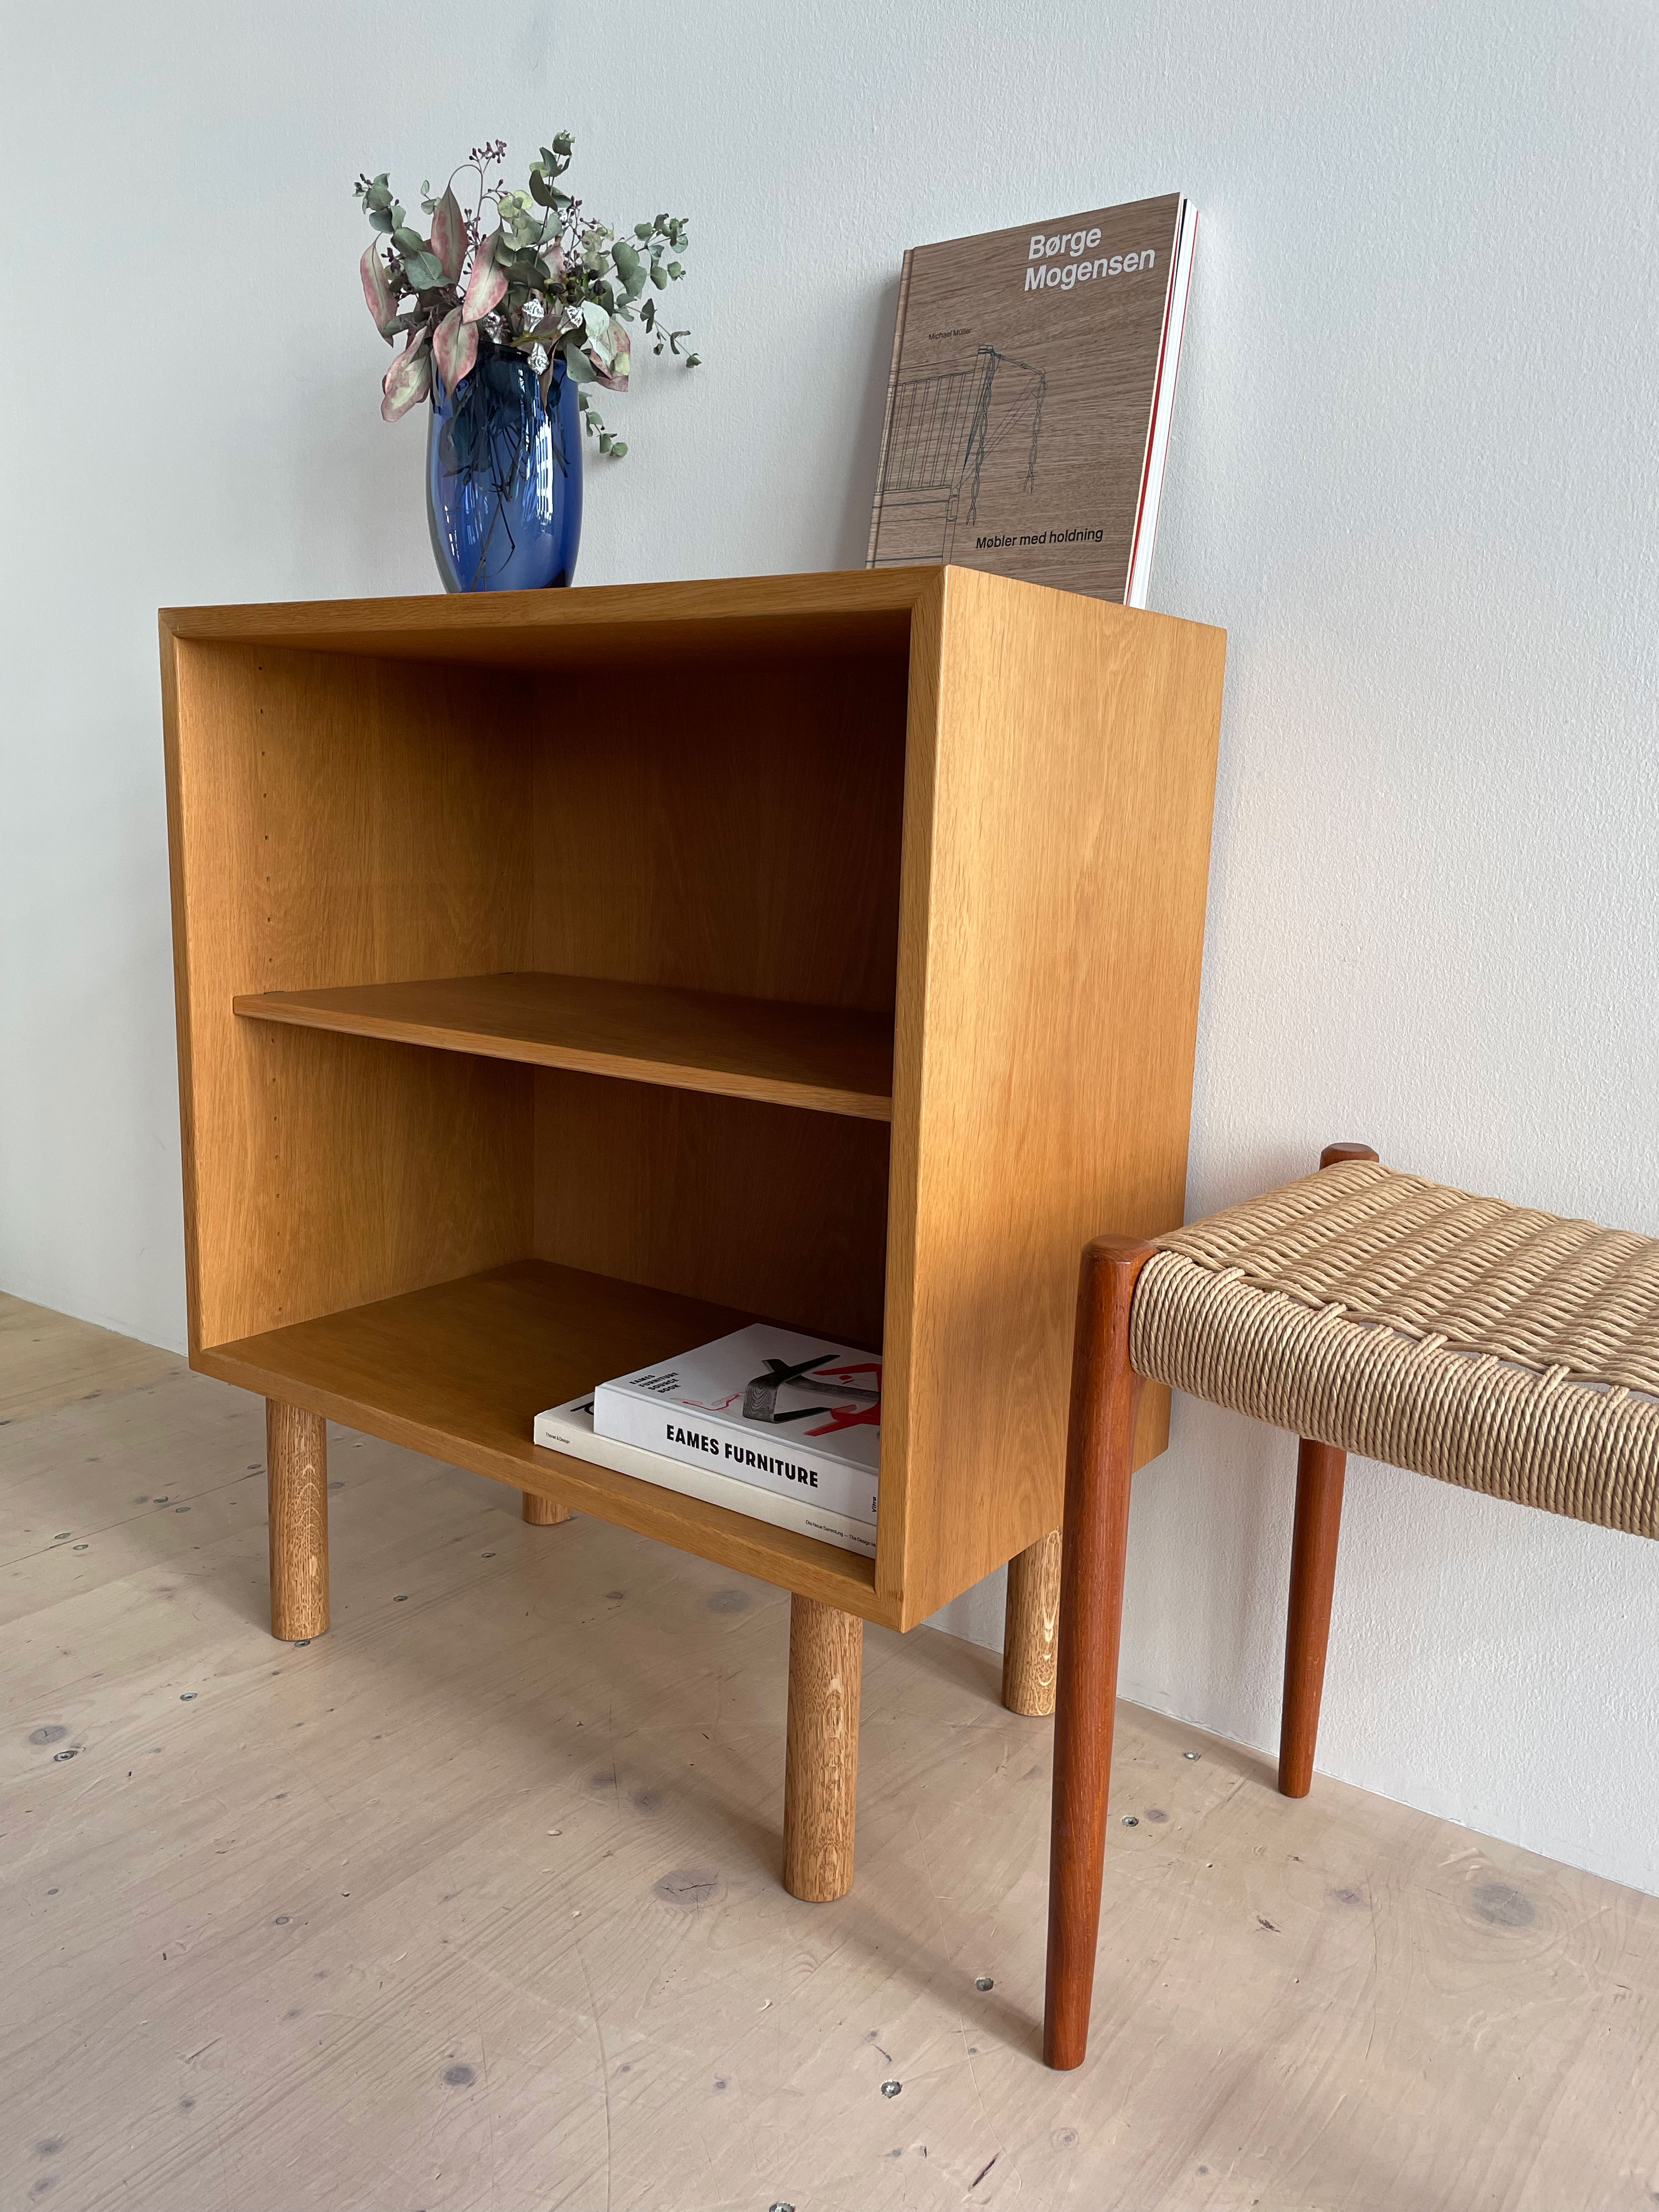 Borge Mogensen Oresung Bookcase in Oak by Karl Andersson & Soner (Sweden). Danish-Modern, Mid-Century Modern Furniture, available at heyday möbel, Grubsenstrasse 19, 8045 Zürich, Switzerland.